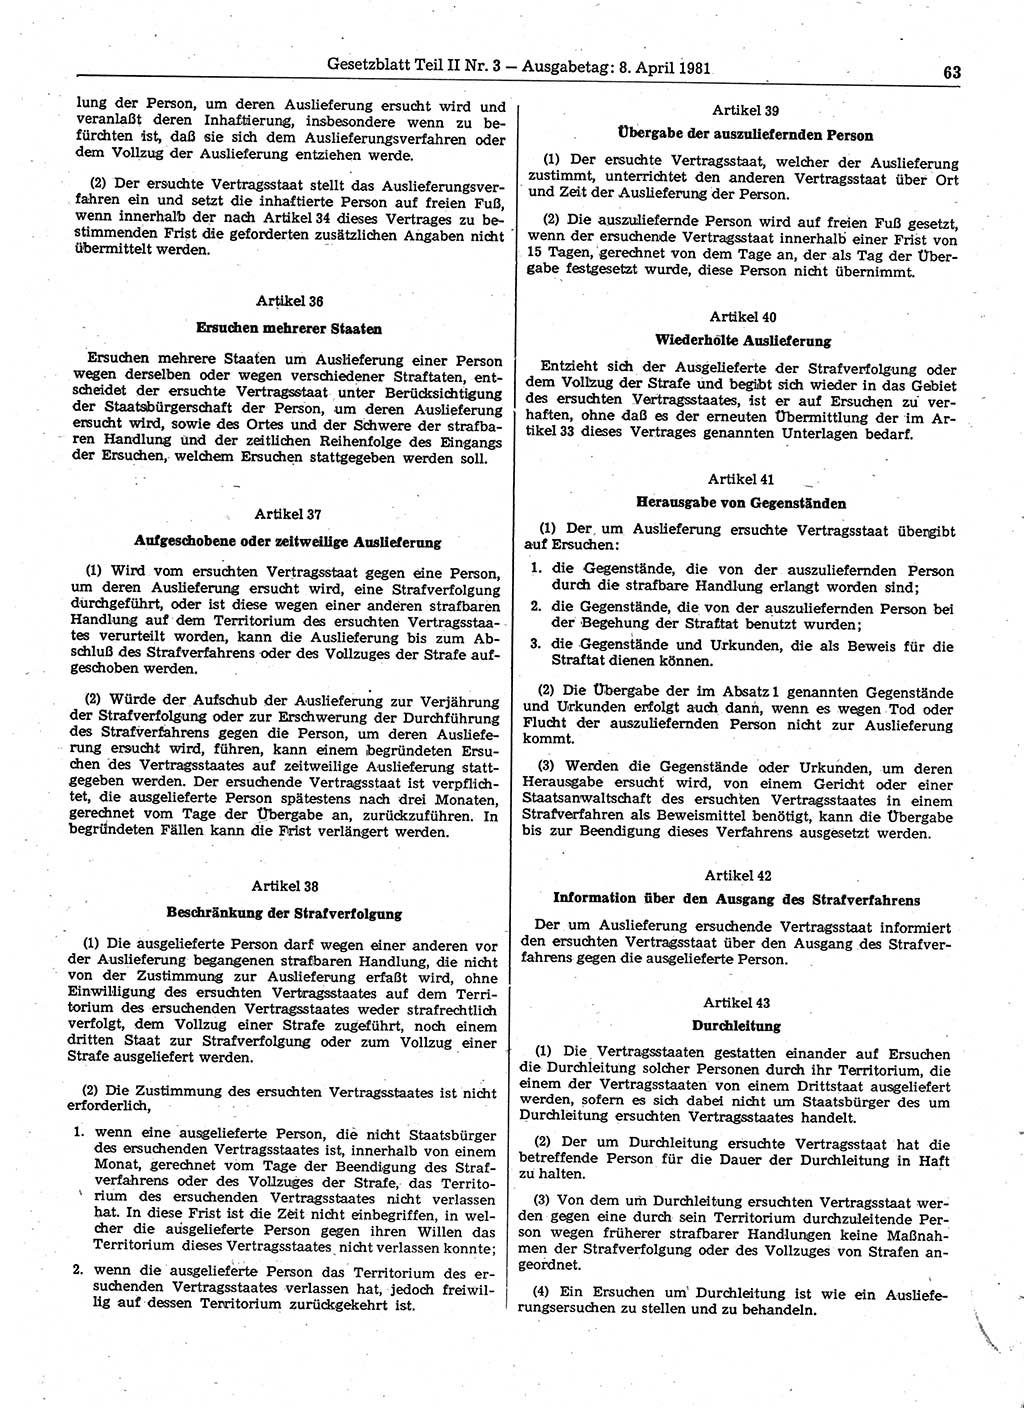 Gesetzblatt (GBl.) der Deutschen Demokratischen Republik (DDR) Teil ⅠⅠ 1981, Seite 63 (GBl. DDR ⅠⅠ 1981, S. 63)